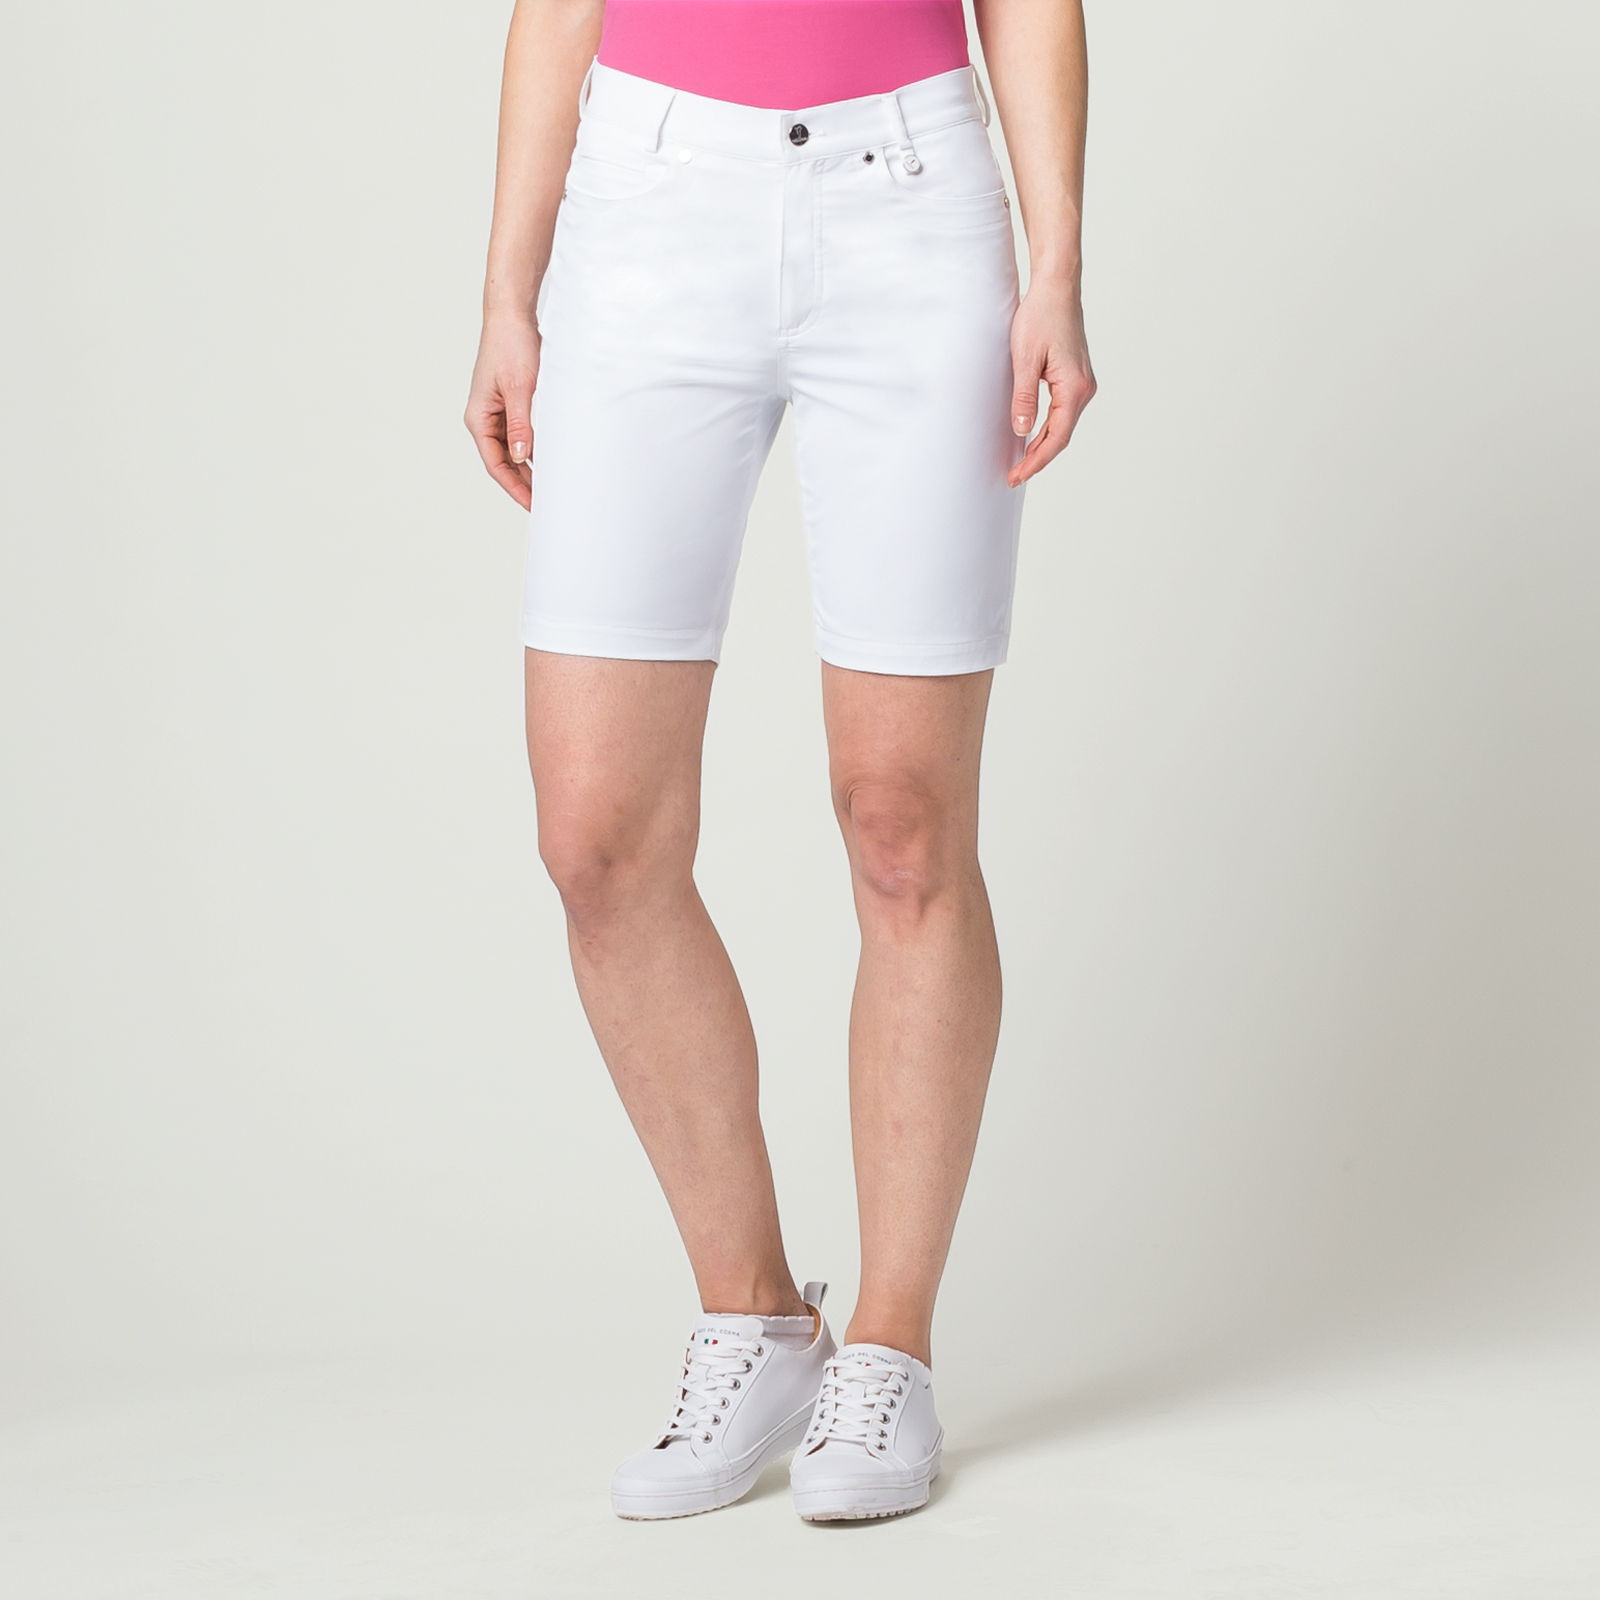 Damen Golf-Bermuda Sonnenschutz mit Extra Stretch Komfort in Slim Fit